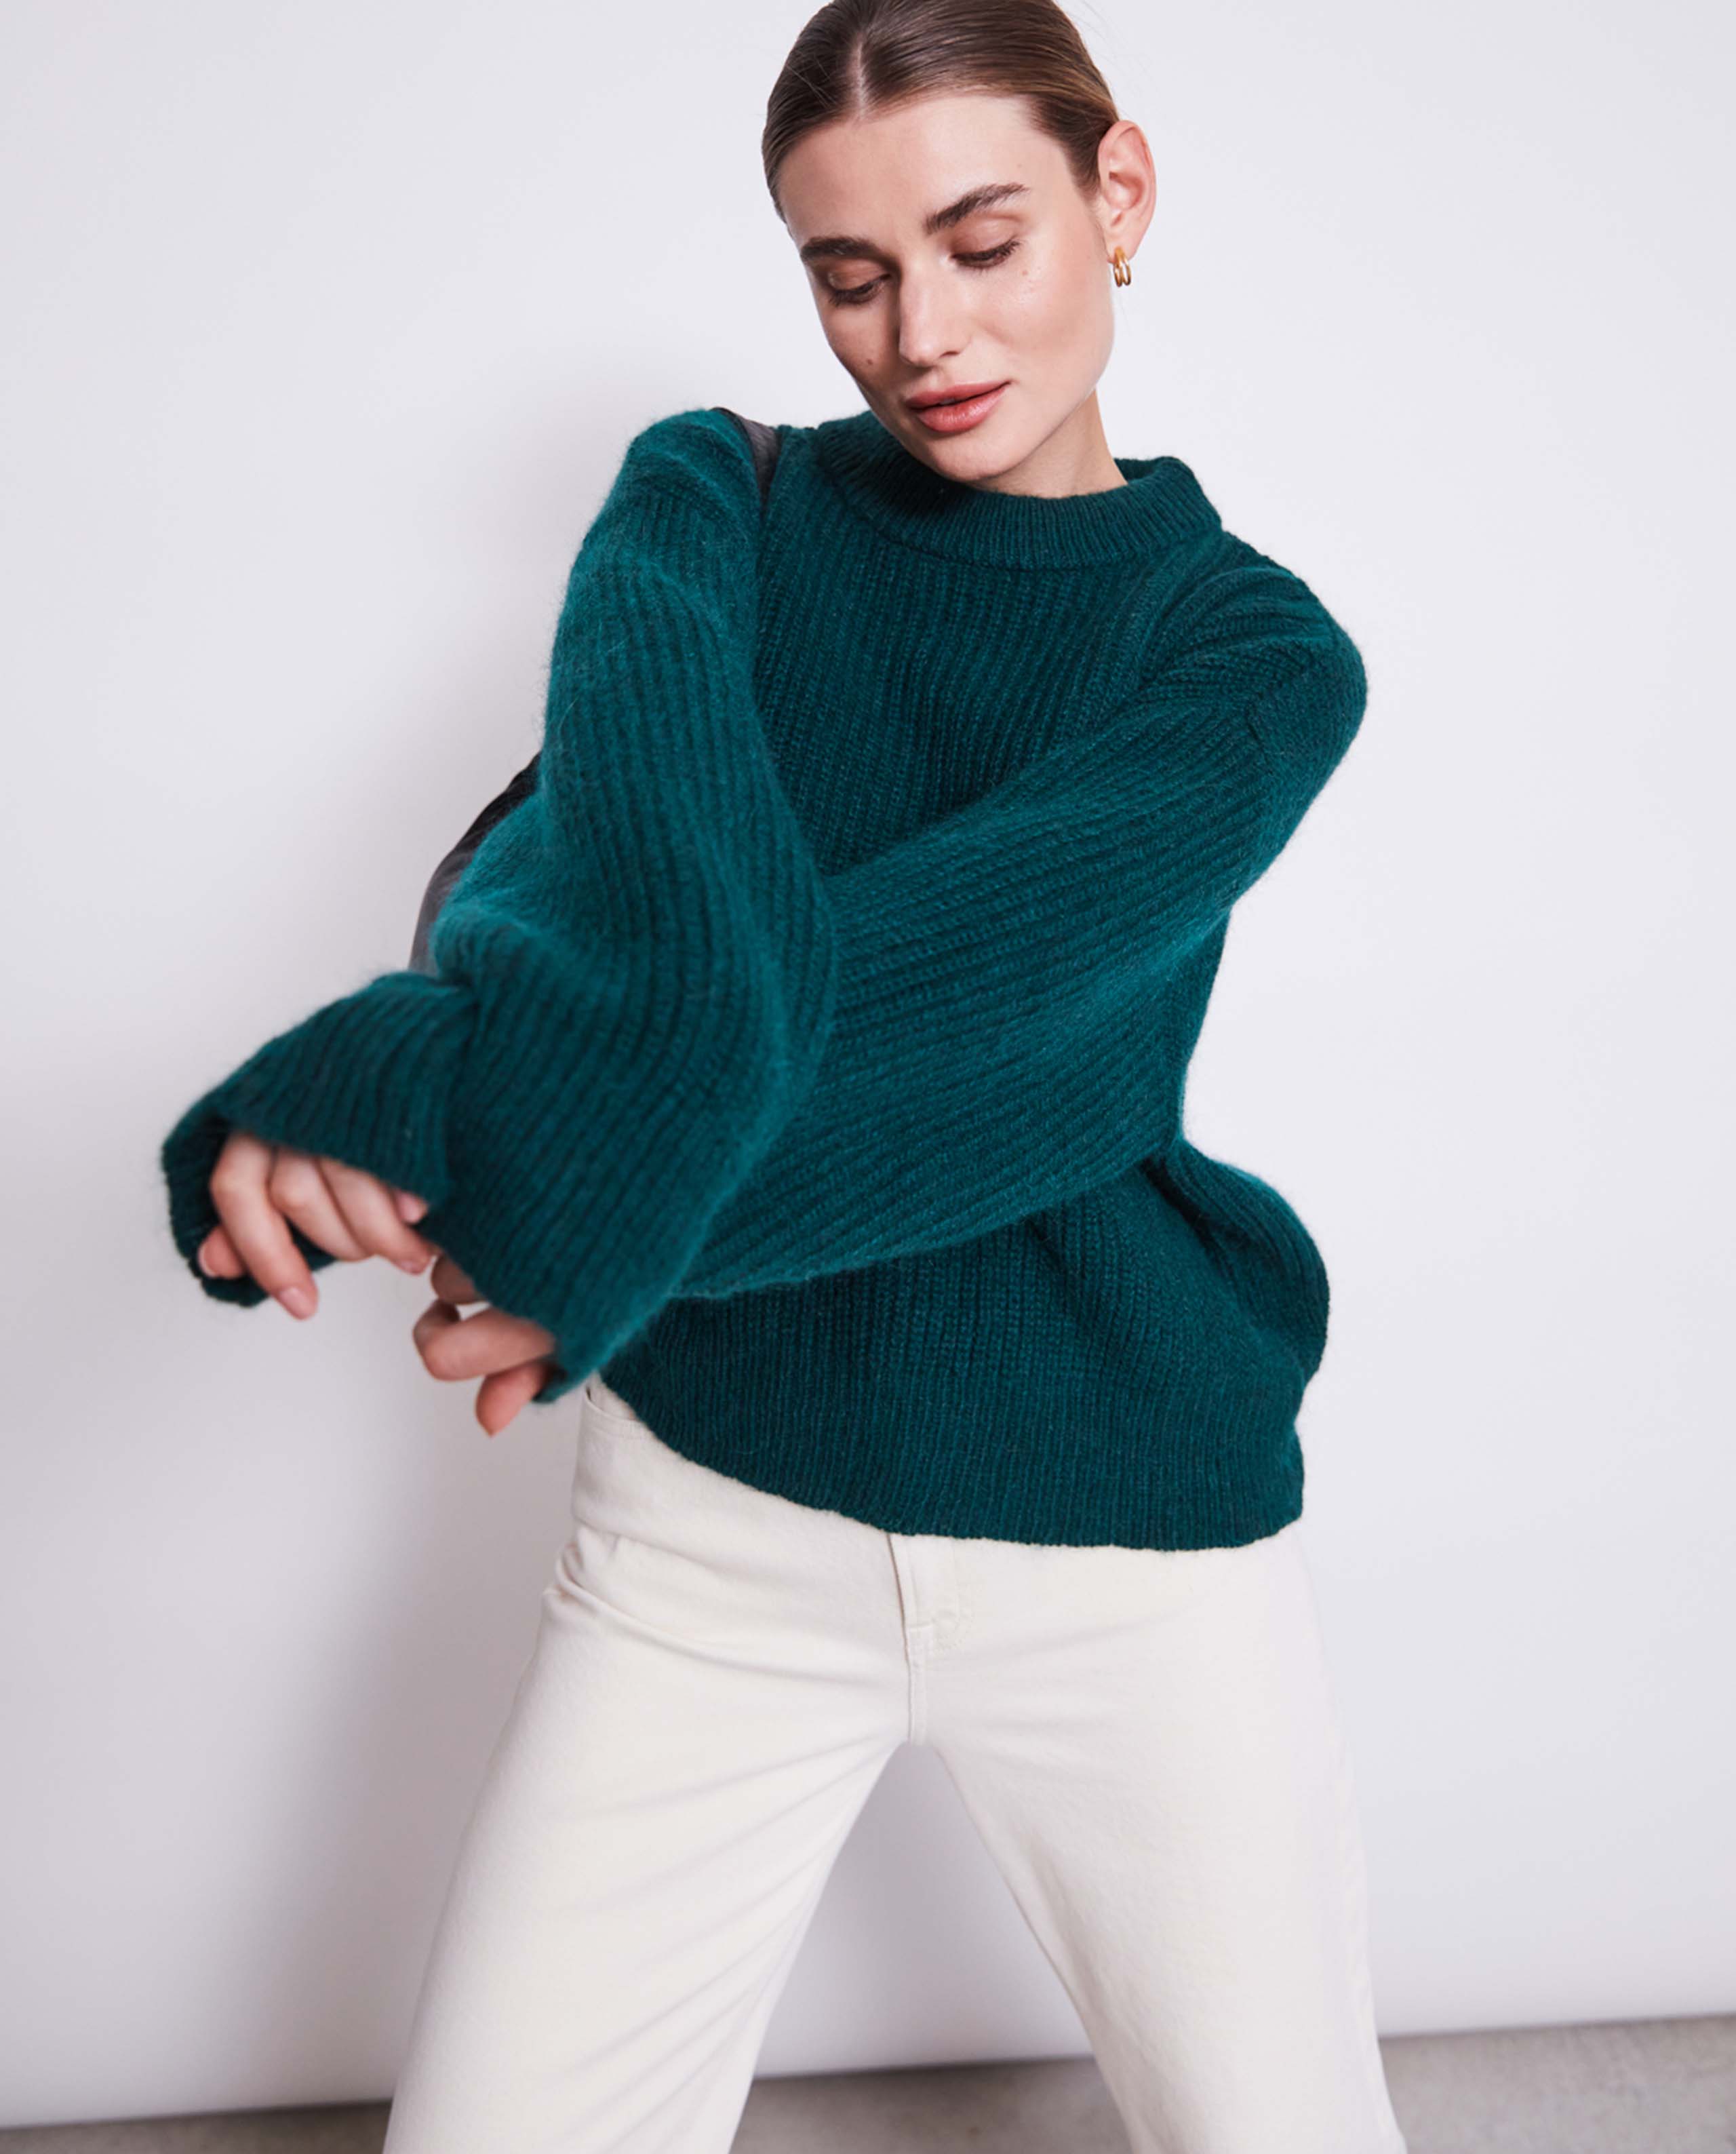 Pull en laine mohair Femme - Vert clair